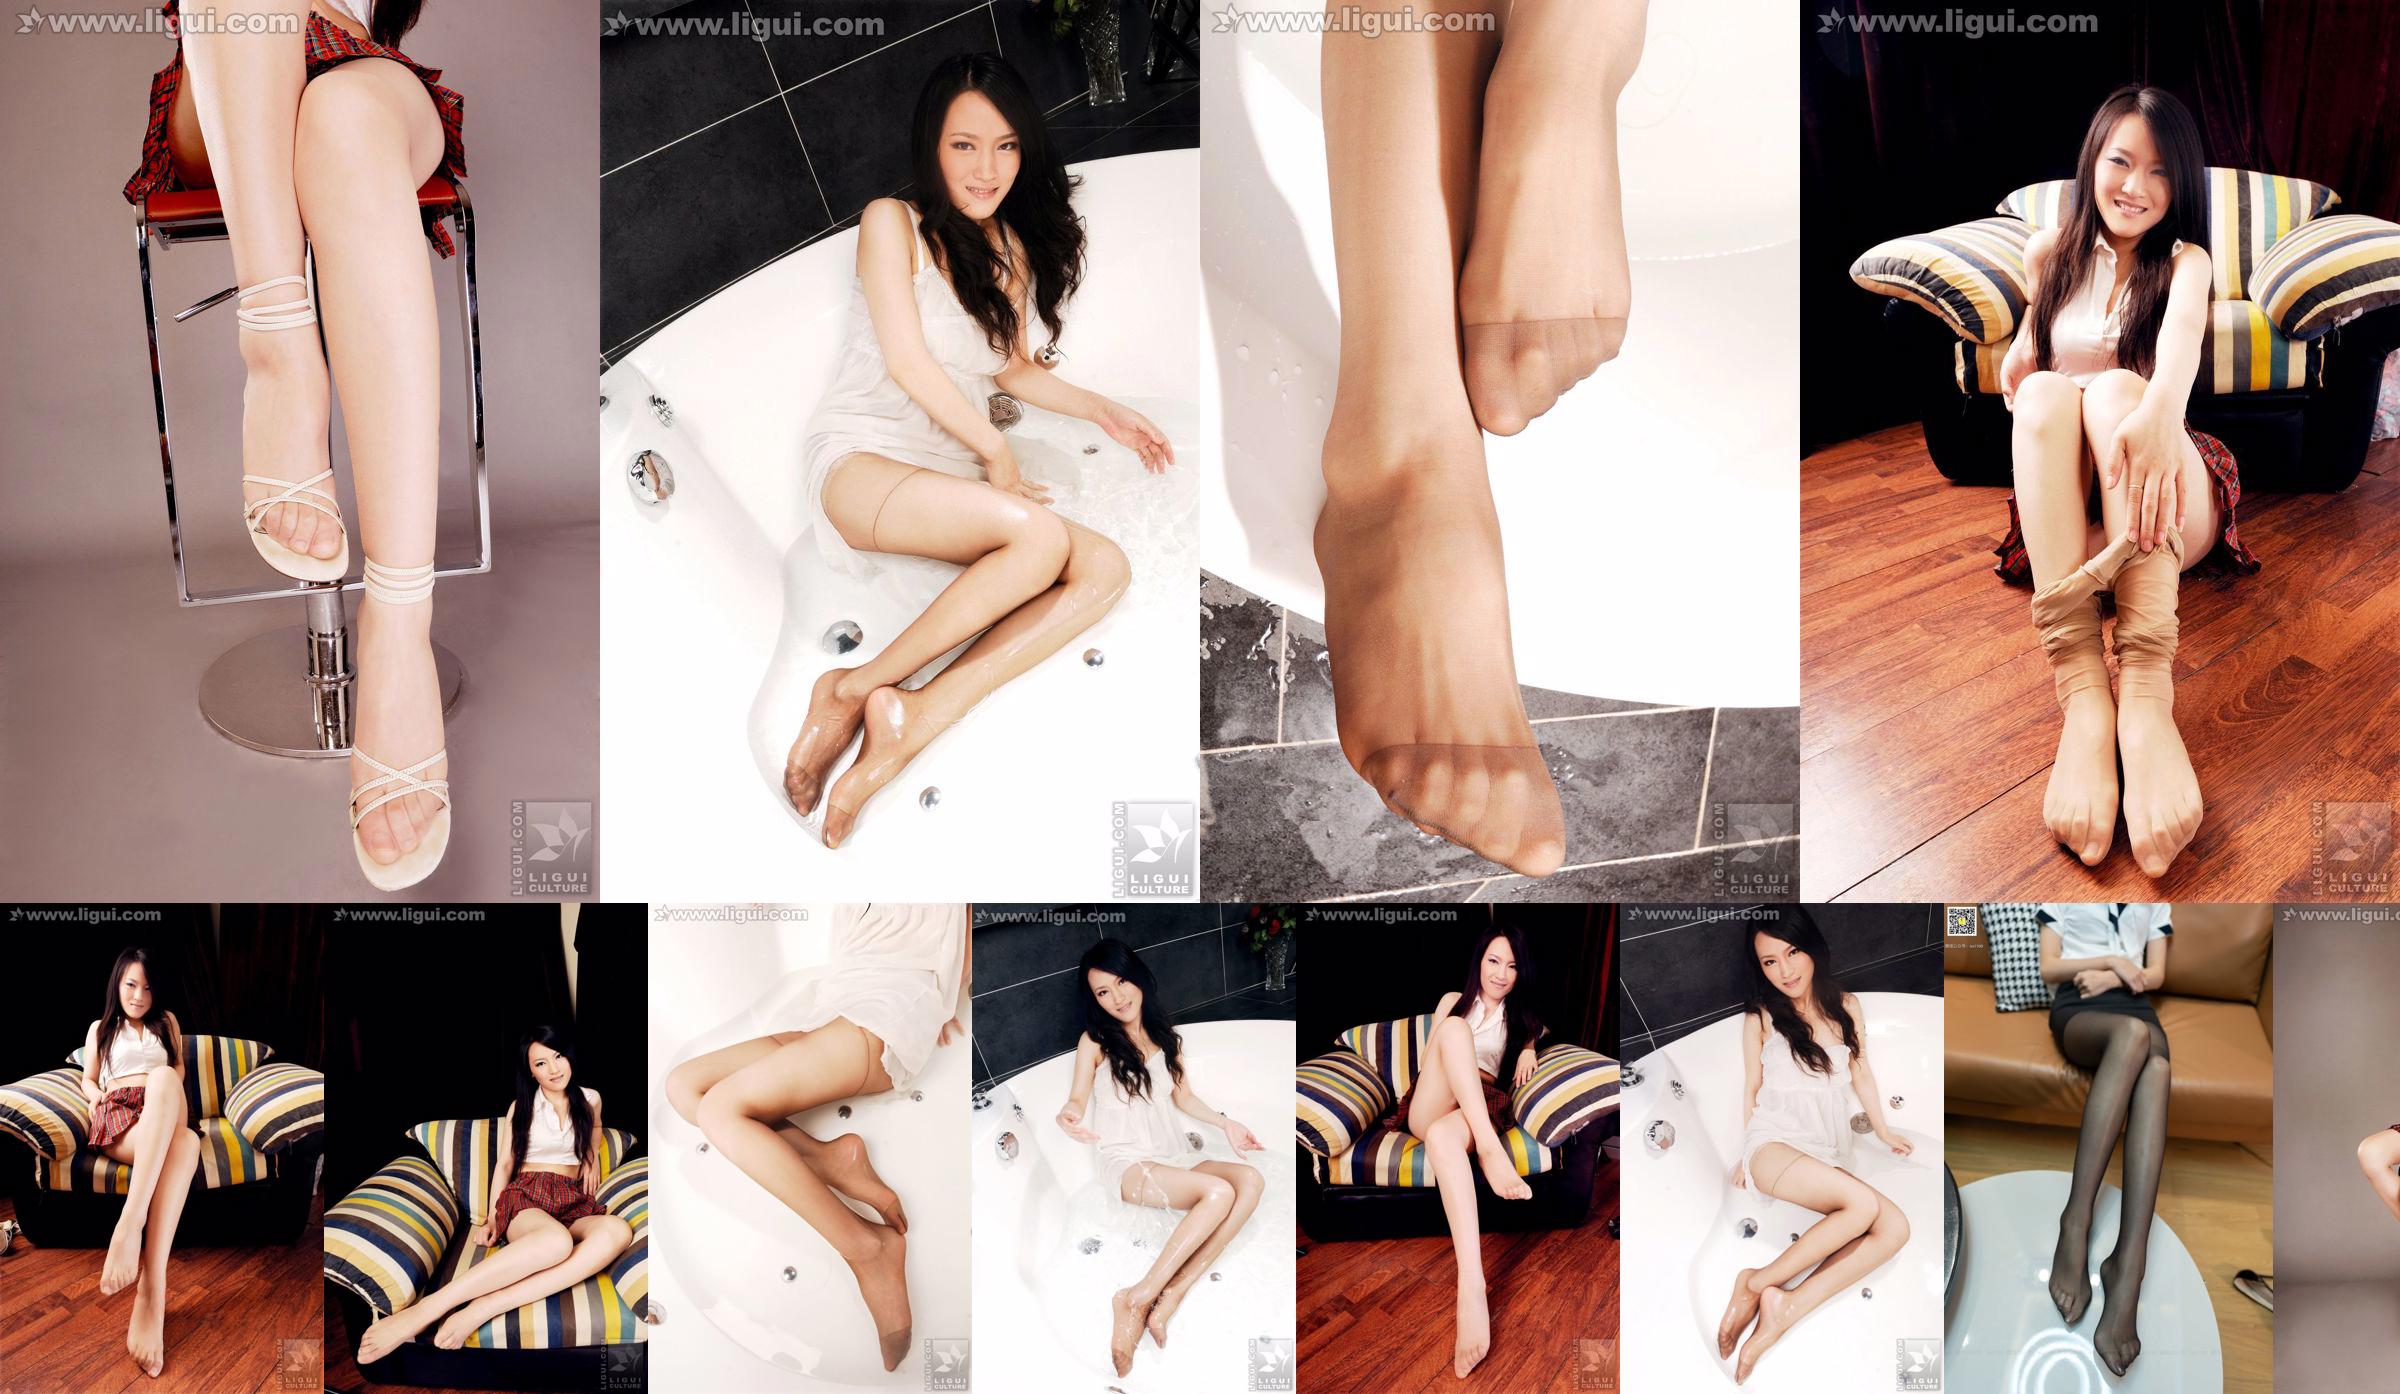 モデルウェンティン「ハイヒールの甘くてかわいい肉ストッキング」[丽柜LiGui]美しい脚と翡翠の足の写真 No.957317 ページ6